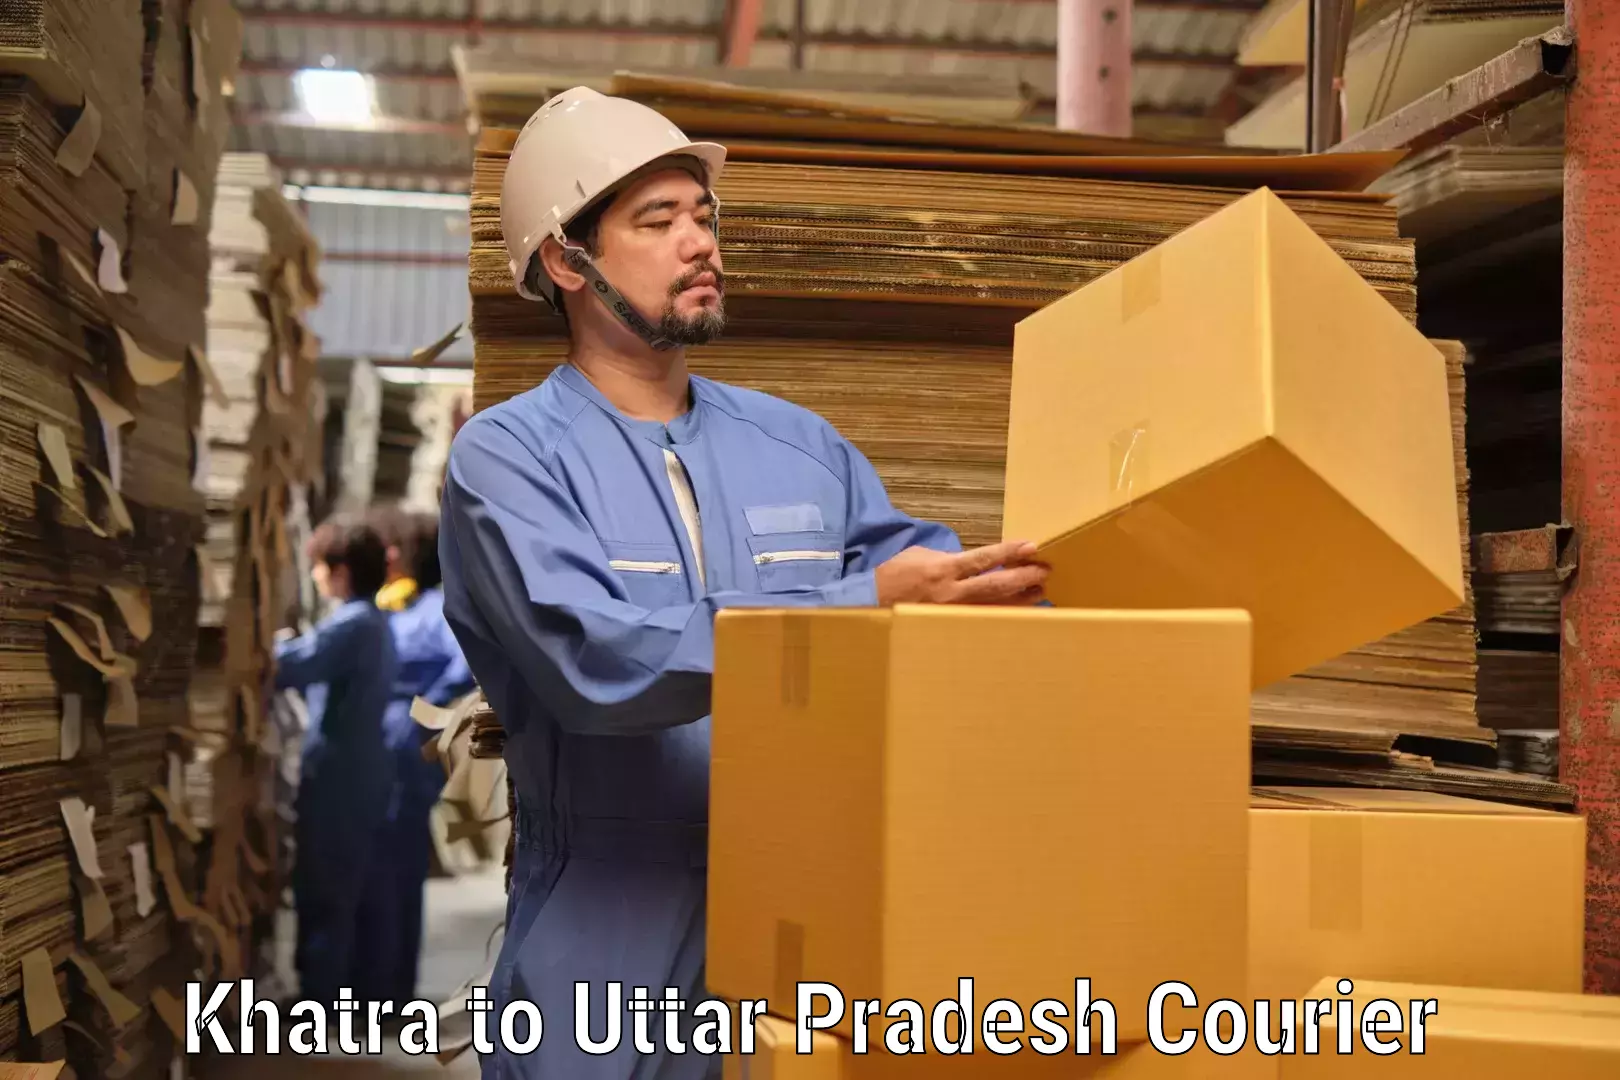 Automated parcel services Khatra to Chandwak